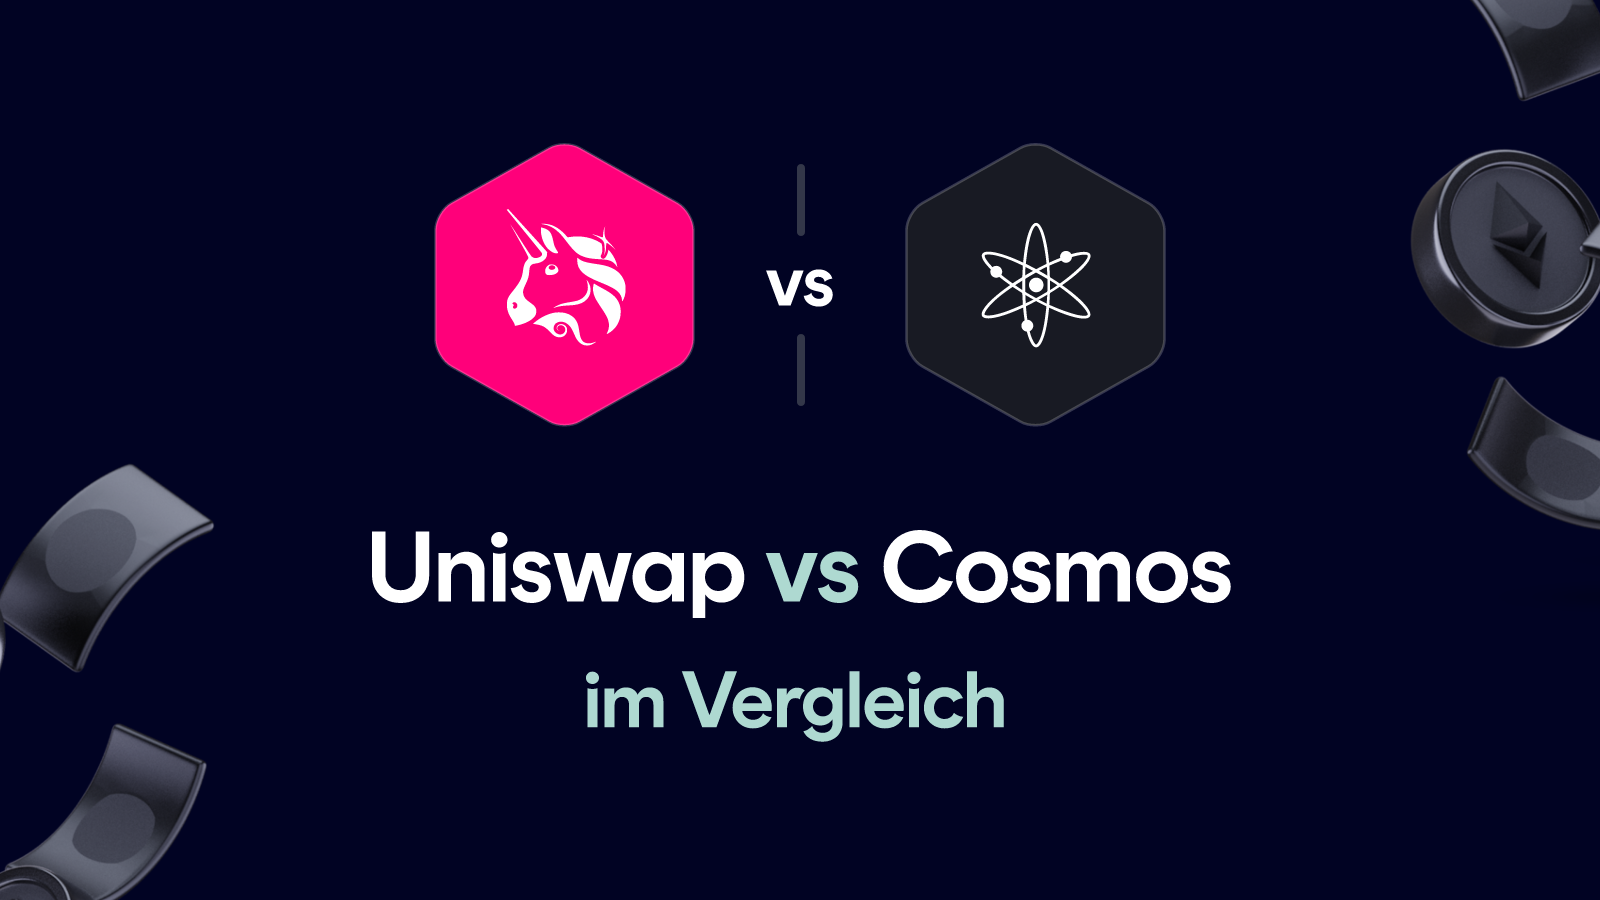 Uniswap vs Cosmos